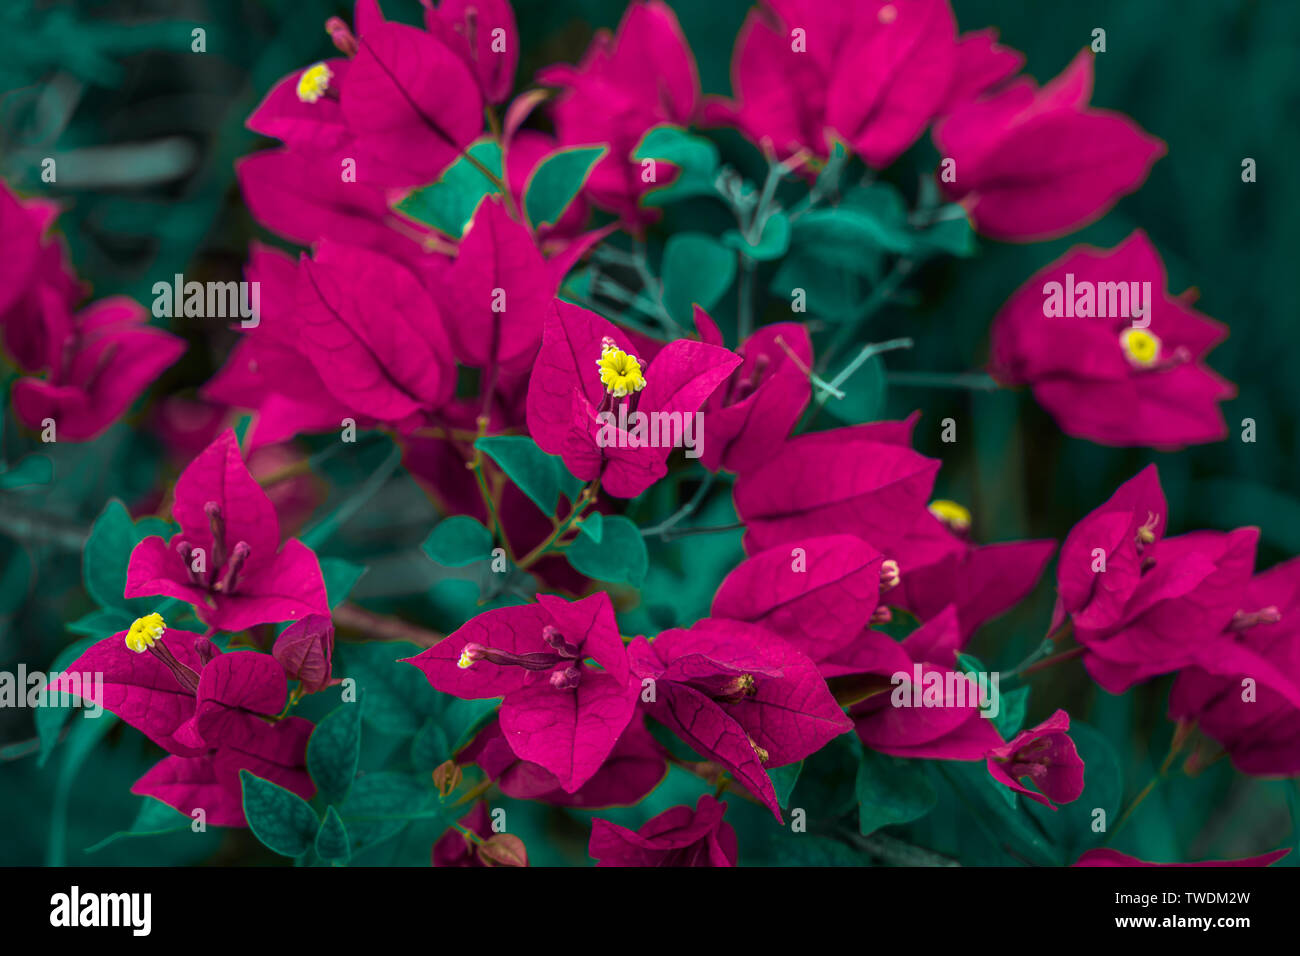 Santa rita flower immagini e fotografie stock ad alta risoluzione - Alamy